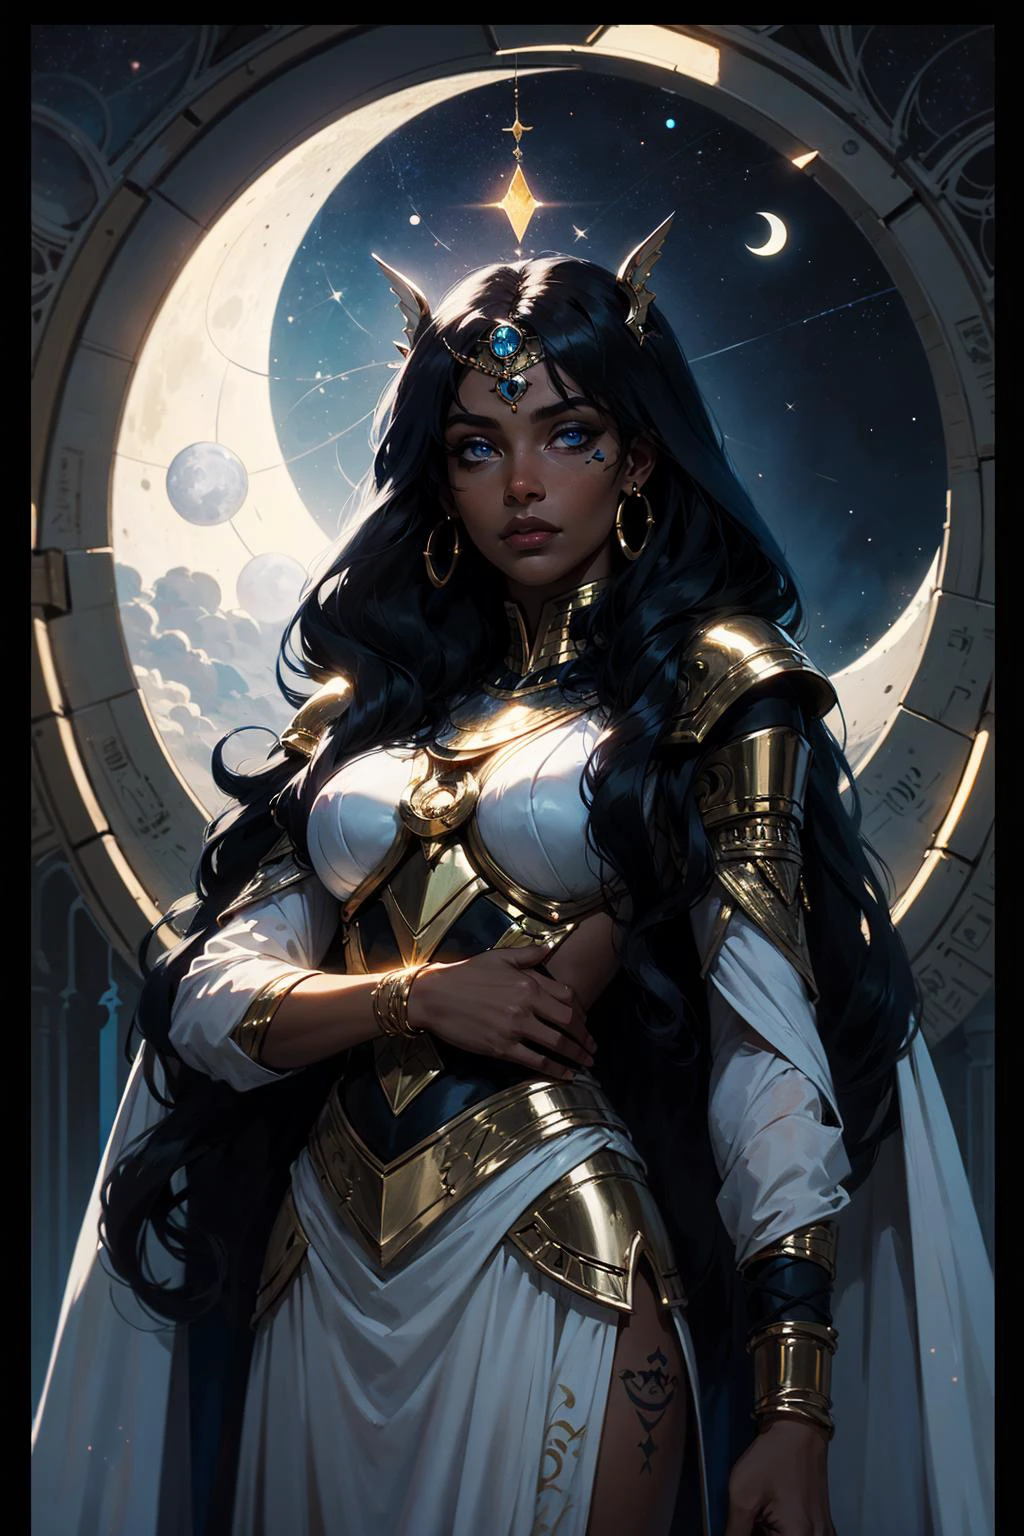 Ishtar, a Deusa da Lua, lançando um feitiço em frente a um vitral, olhos azuis, cabelo preto comprido, silver crescent moon, raio de luar, pele escura, tatuagem olho de horus, iconografia egípcia, ilustração de obra-prima, armadura branca, tinta olá, Falando, explicando, no espaço, Luz das estrelas